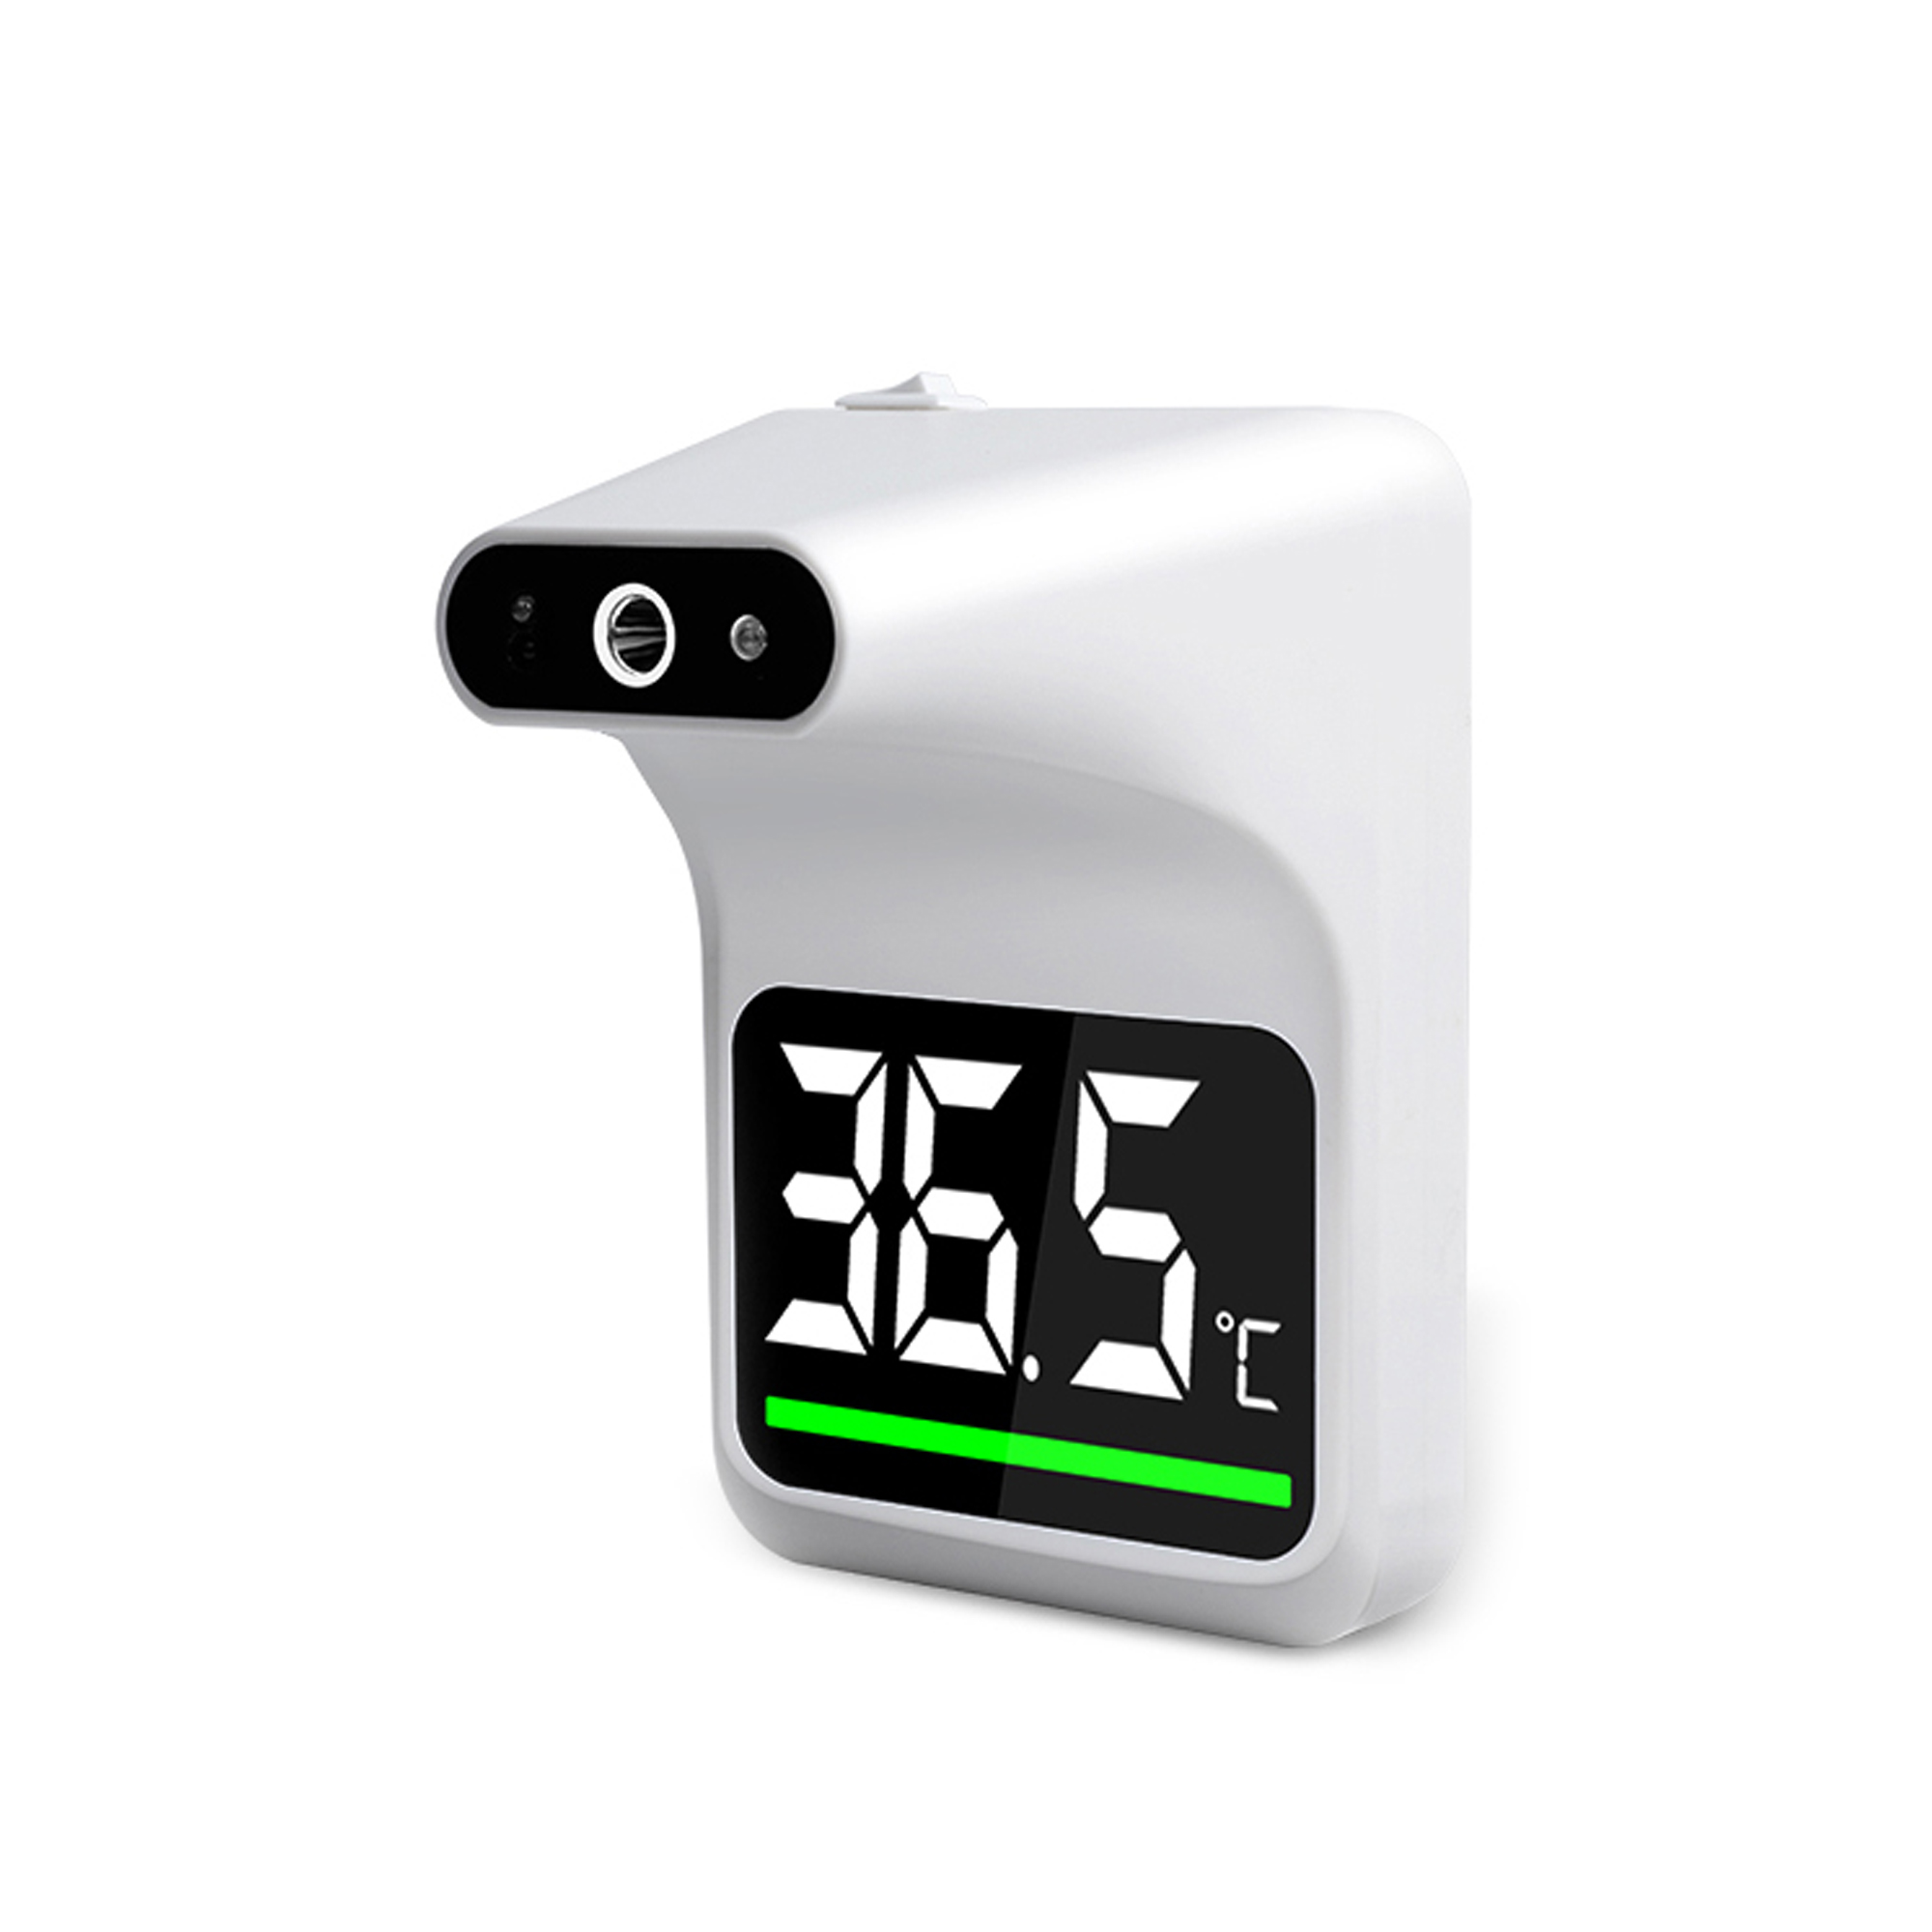 Pronta disponibilità - Termoscanner Termometro infrarossi a pistola  professionale portatile frontale facciale a distanza CERTIFICATO